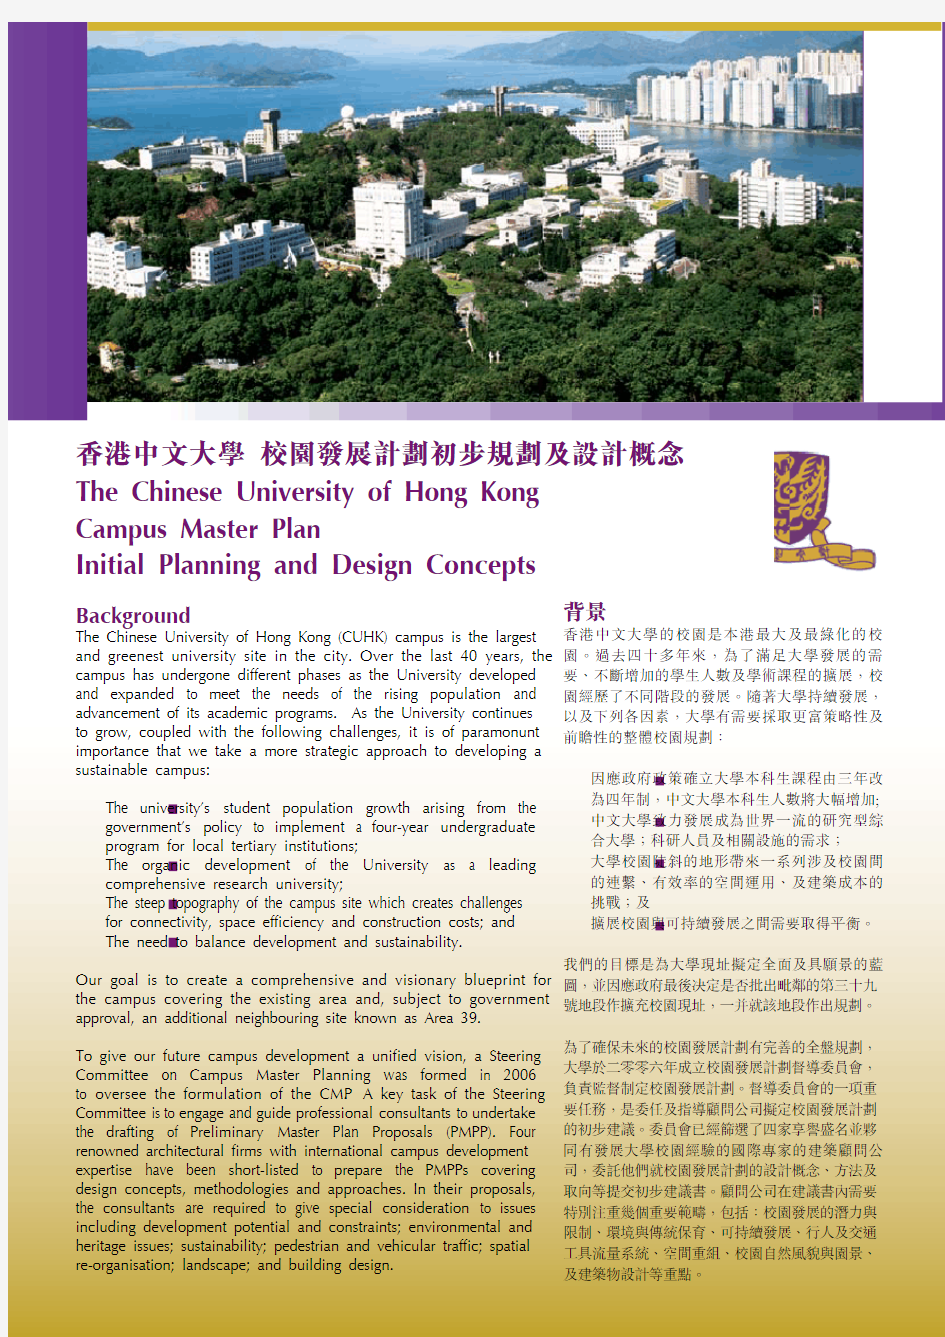 香港中文大学 校园发展计划初步规划及设计概念